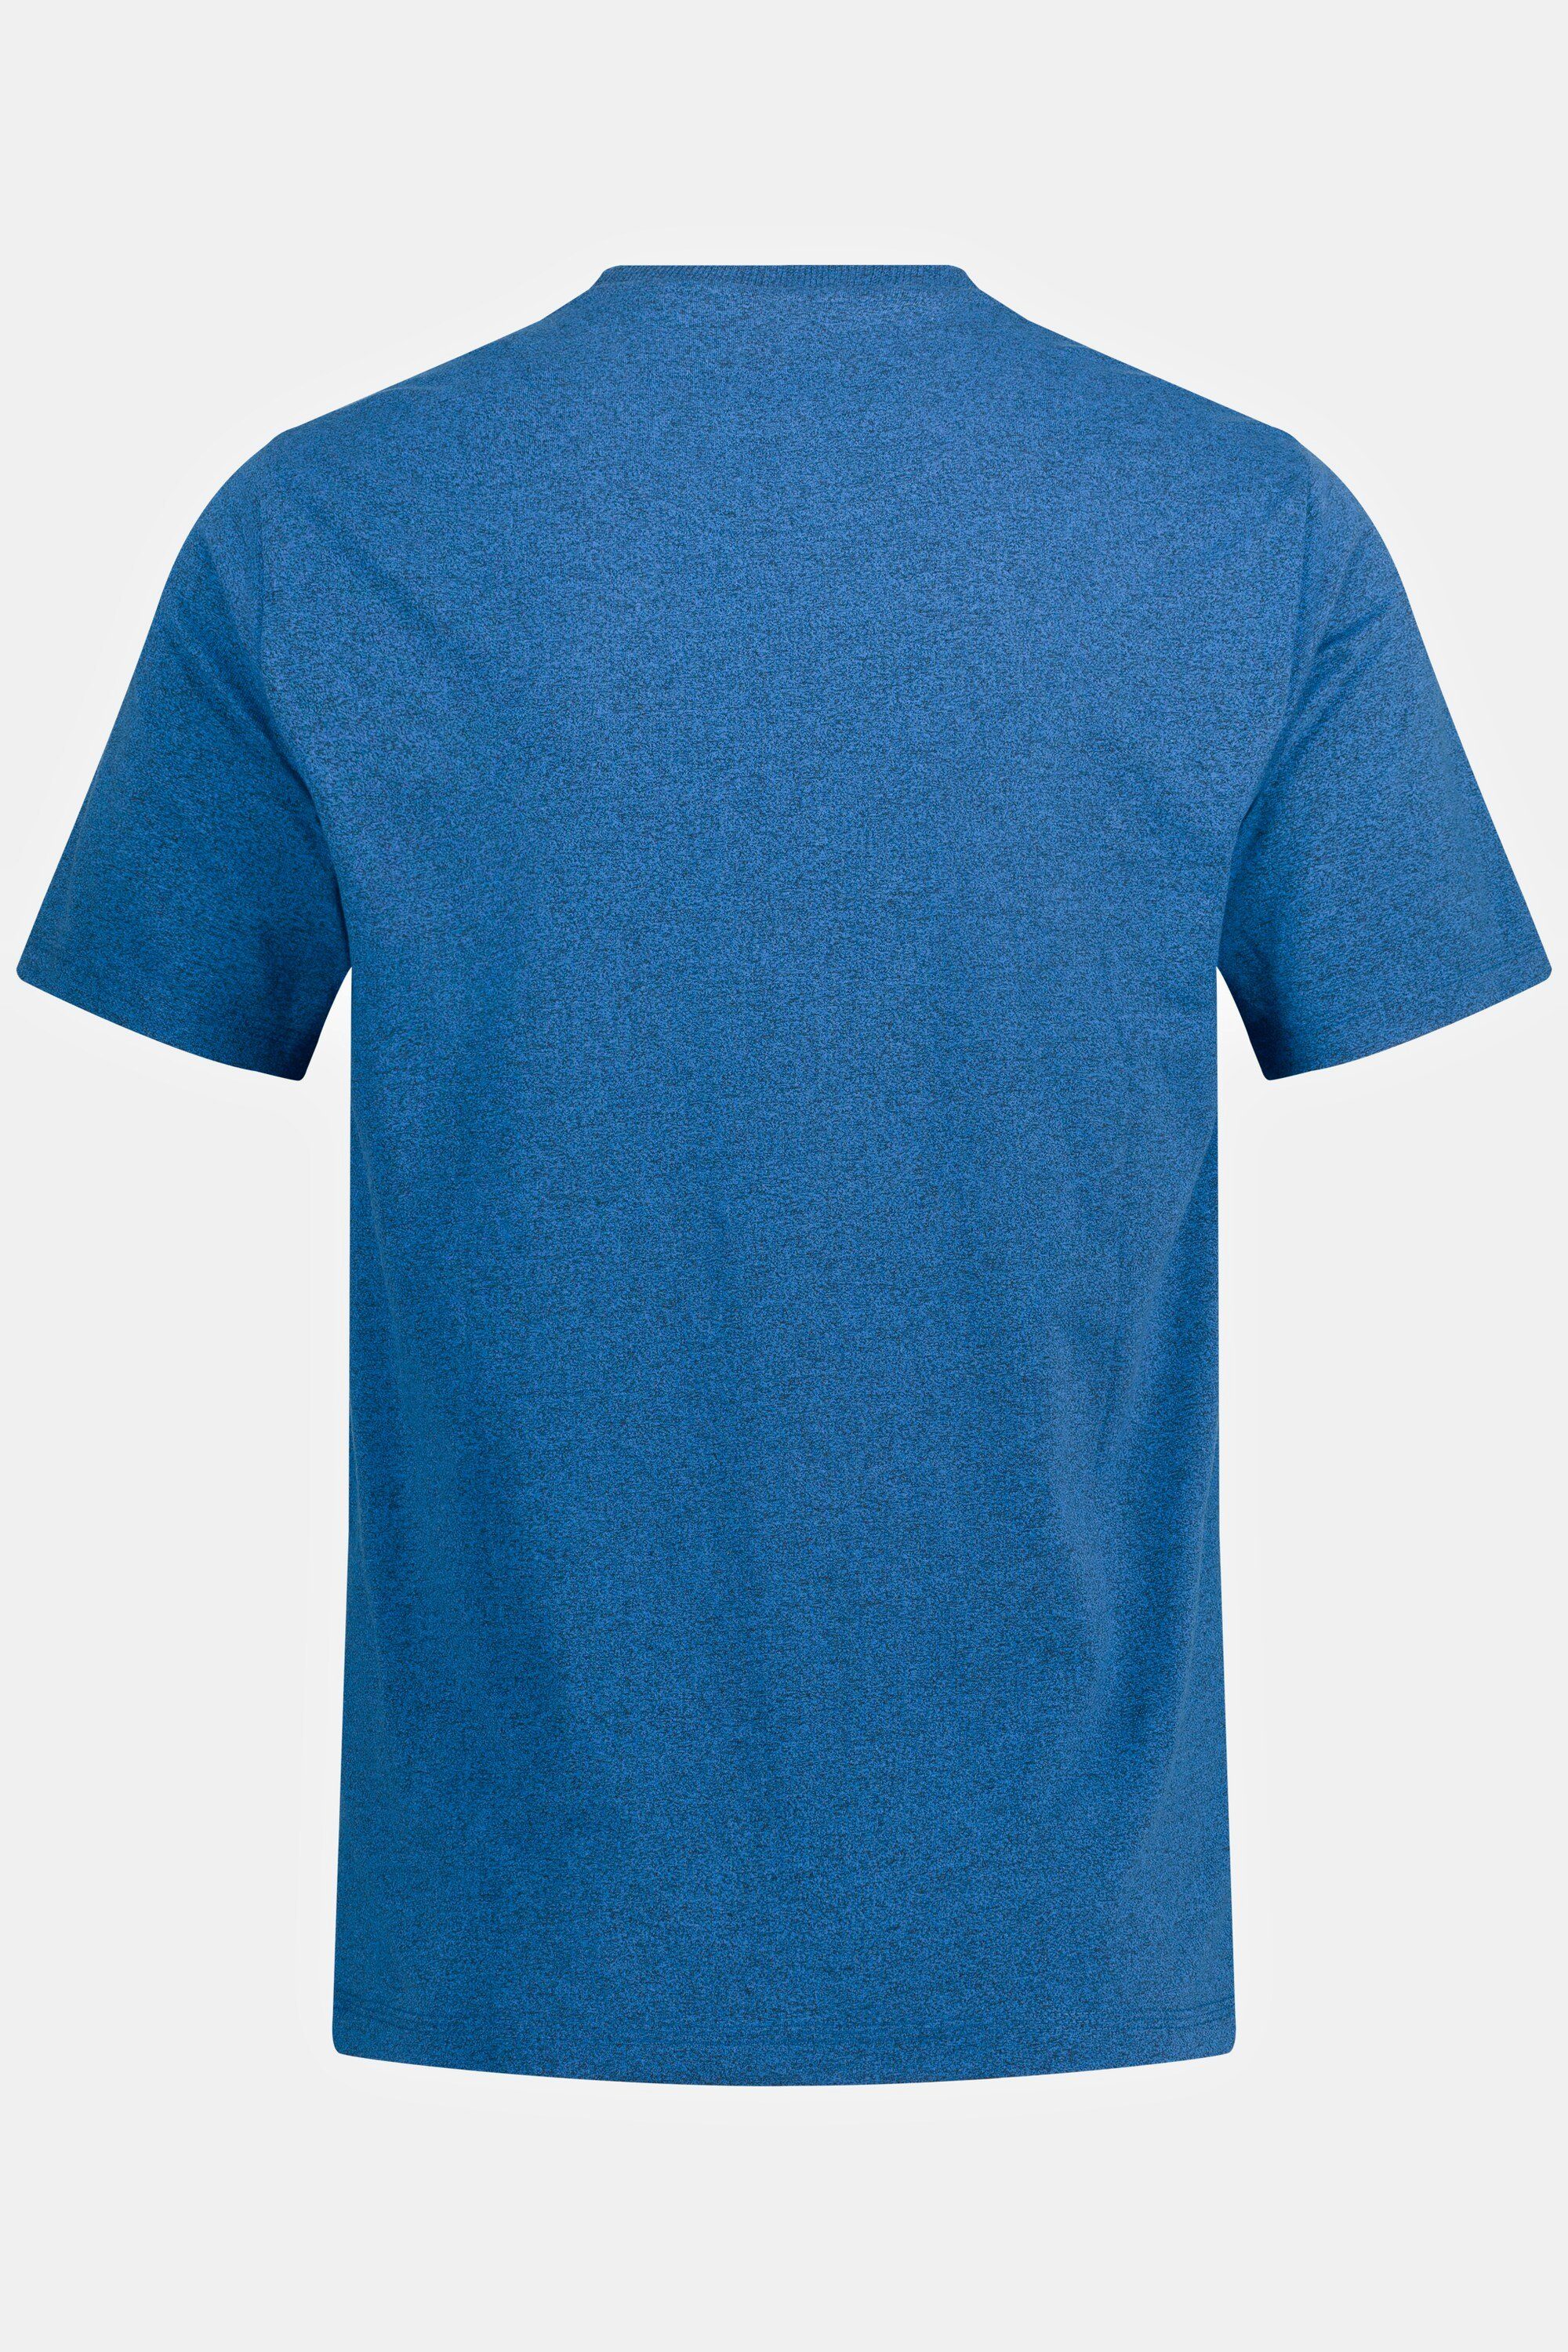 Halbarm Brusttasche JP1880 mittelblau T-Shirt Rundhals T-Shirt